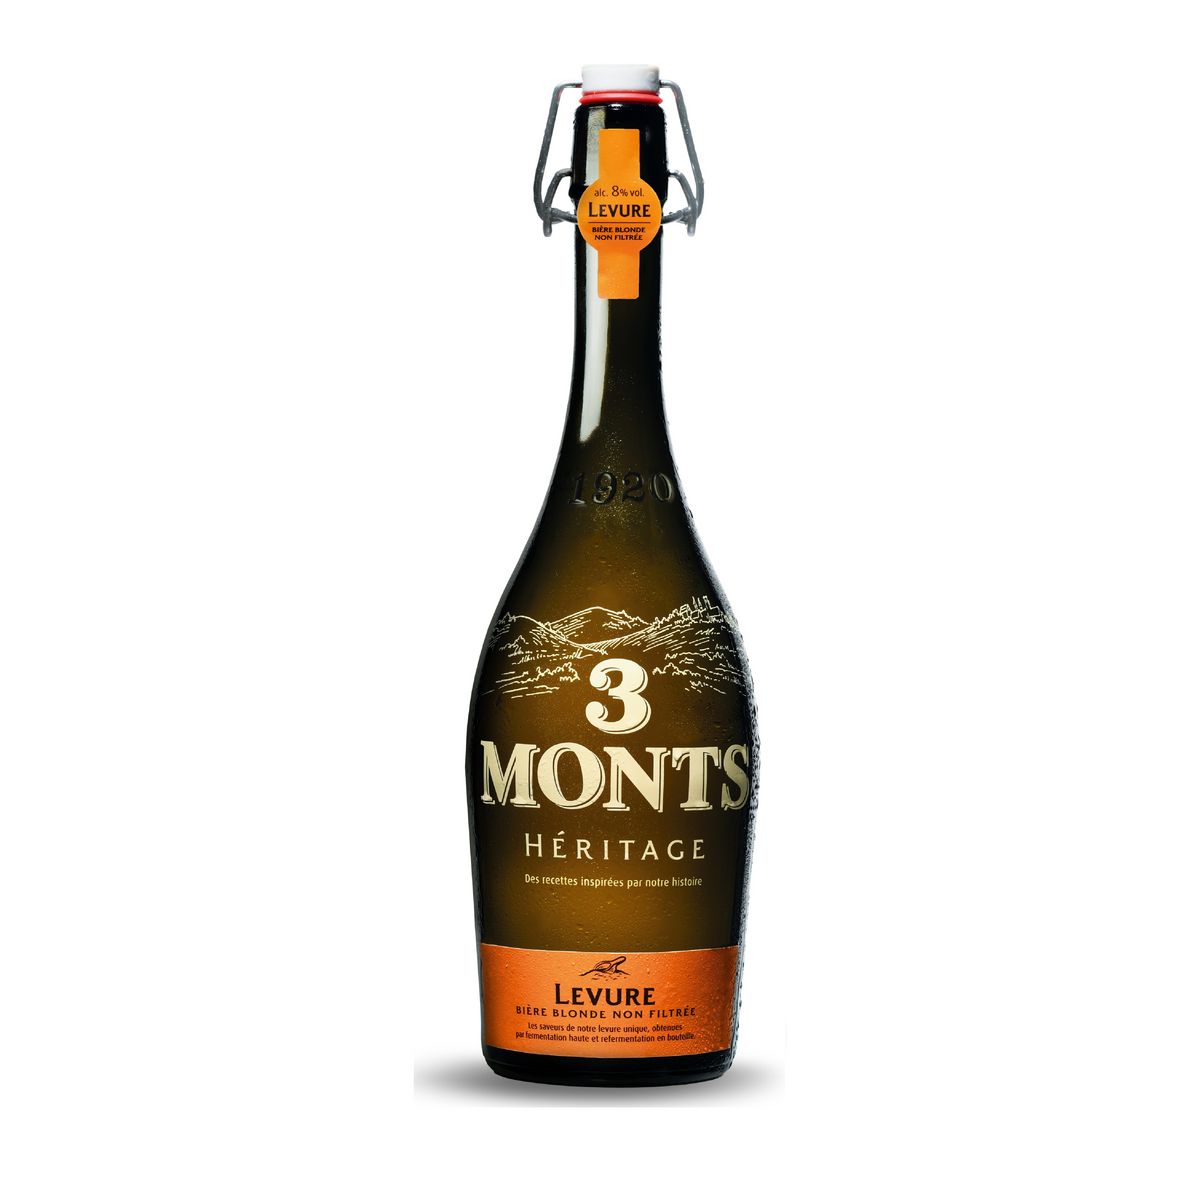 3 MONTS Bière blonde non filtrée levure héritage 8% bouteille 75cl